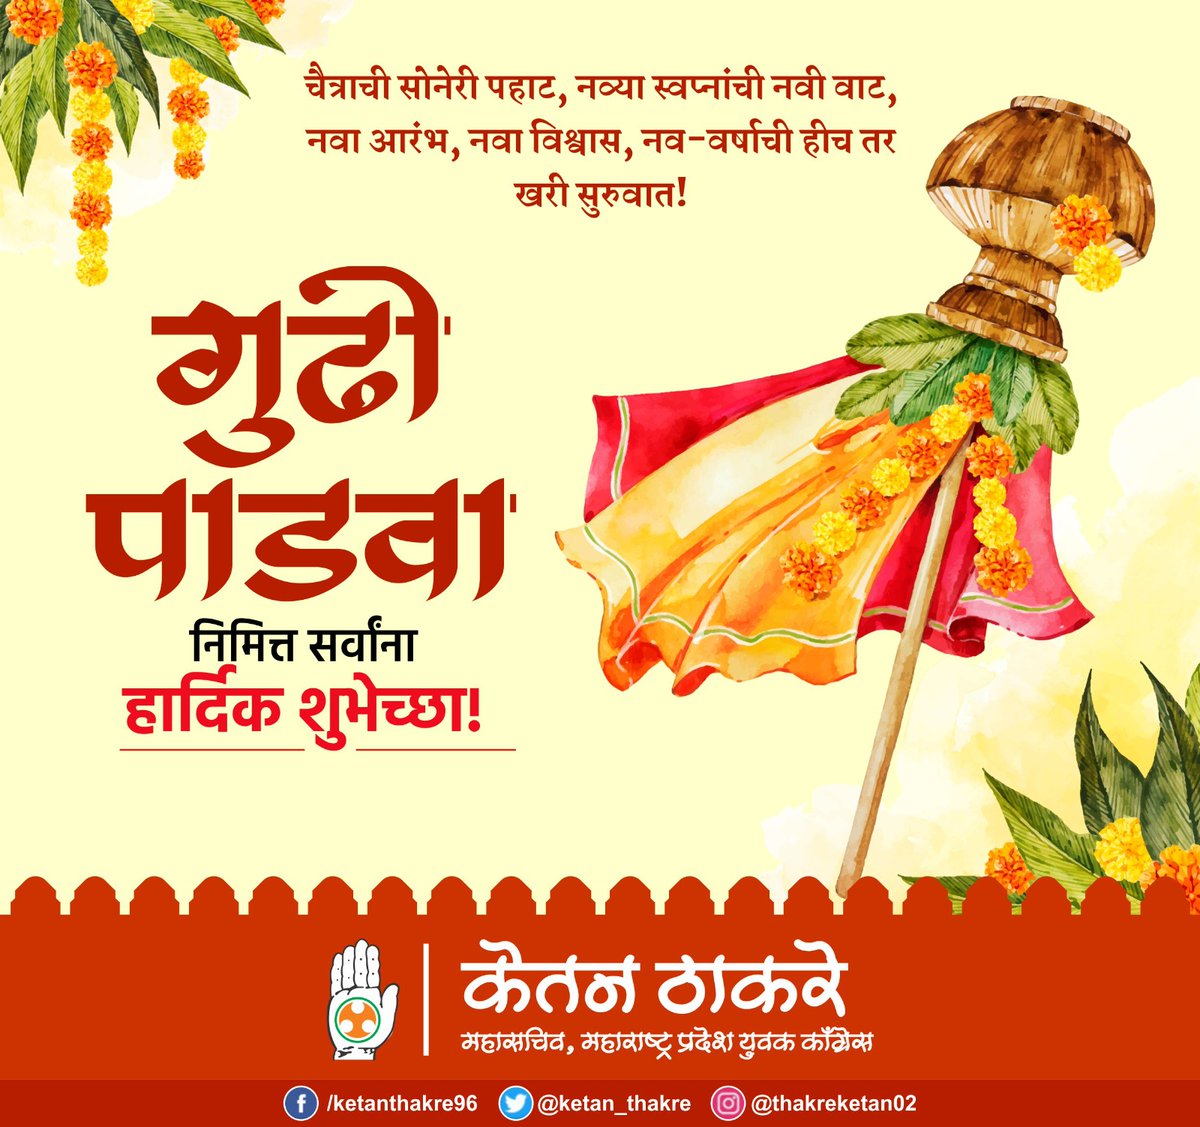 गुढीपाडवा व मराठी नववर्षाच्या हार्दिक शुभेच्छा!

#GudhiPadwa